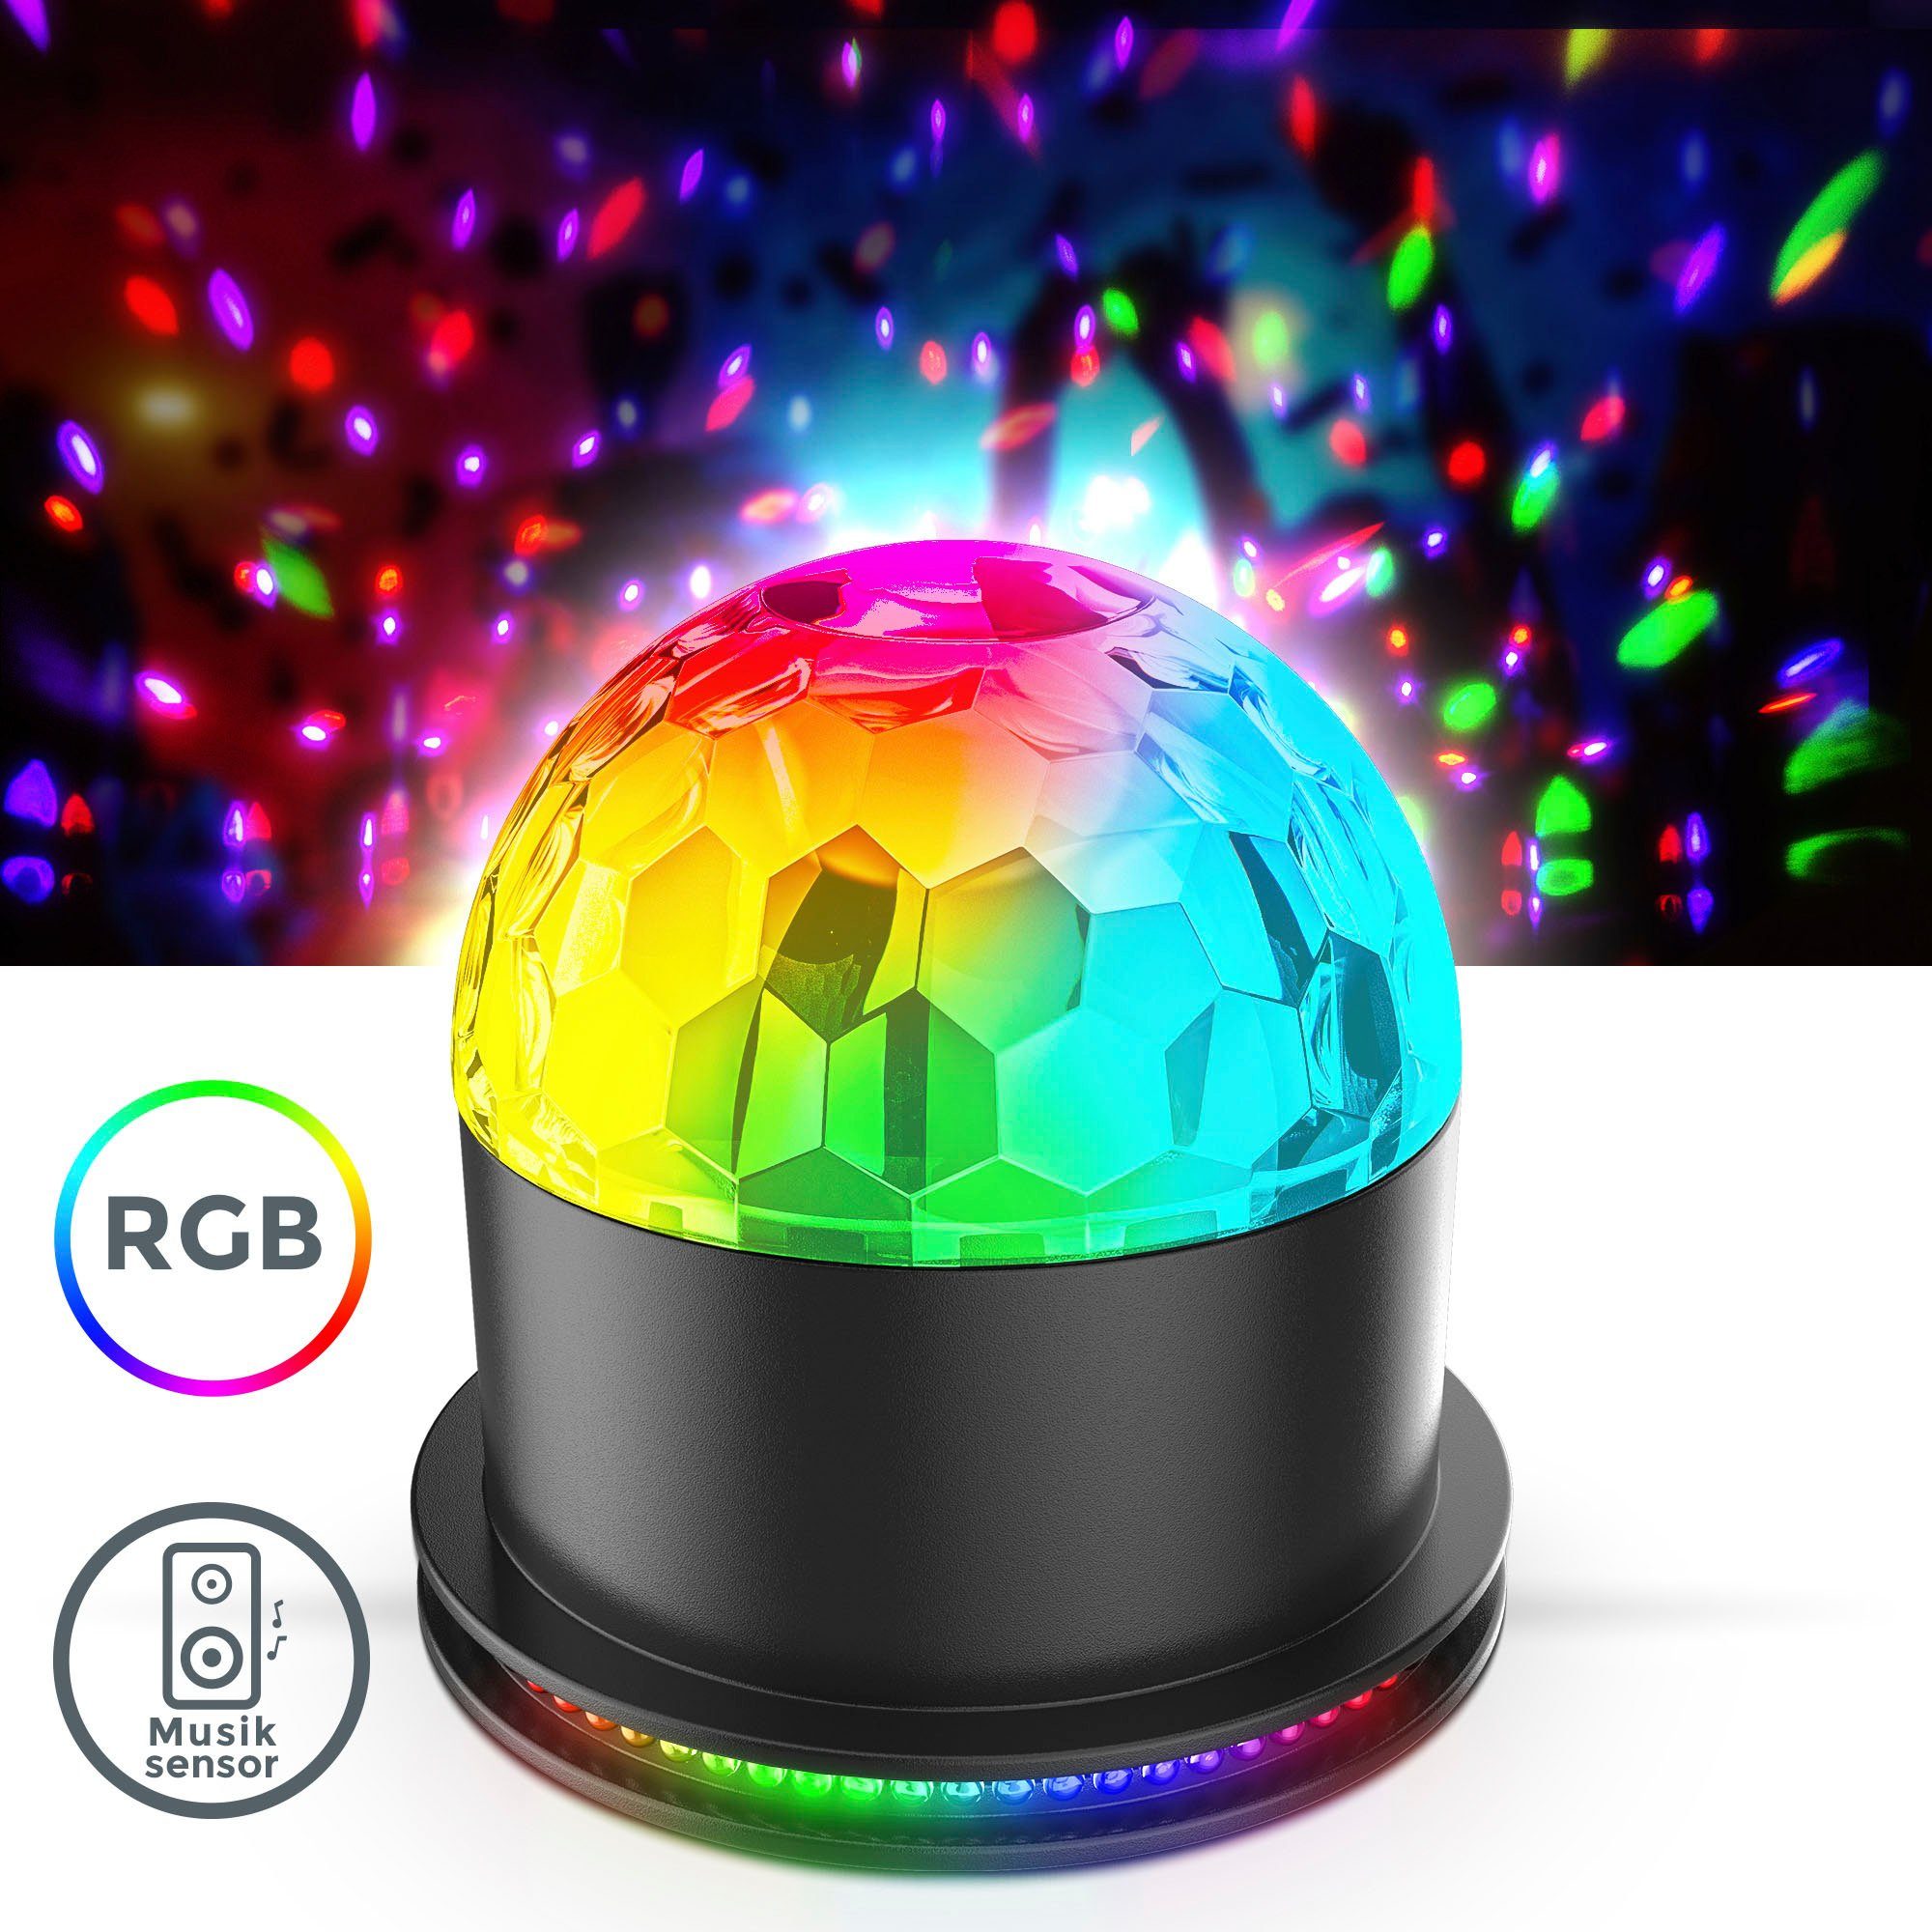 Partylicht, Musiksensor, mit RGB, LED Farbwechsel, Partyleuchte, Motivstrahler Tischlampe Discolicht, LED integriert, RGB RGB, LED BK_GD1327 fest B.K.Licht